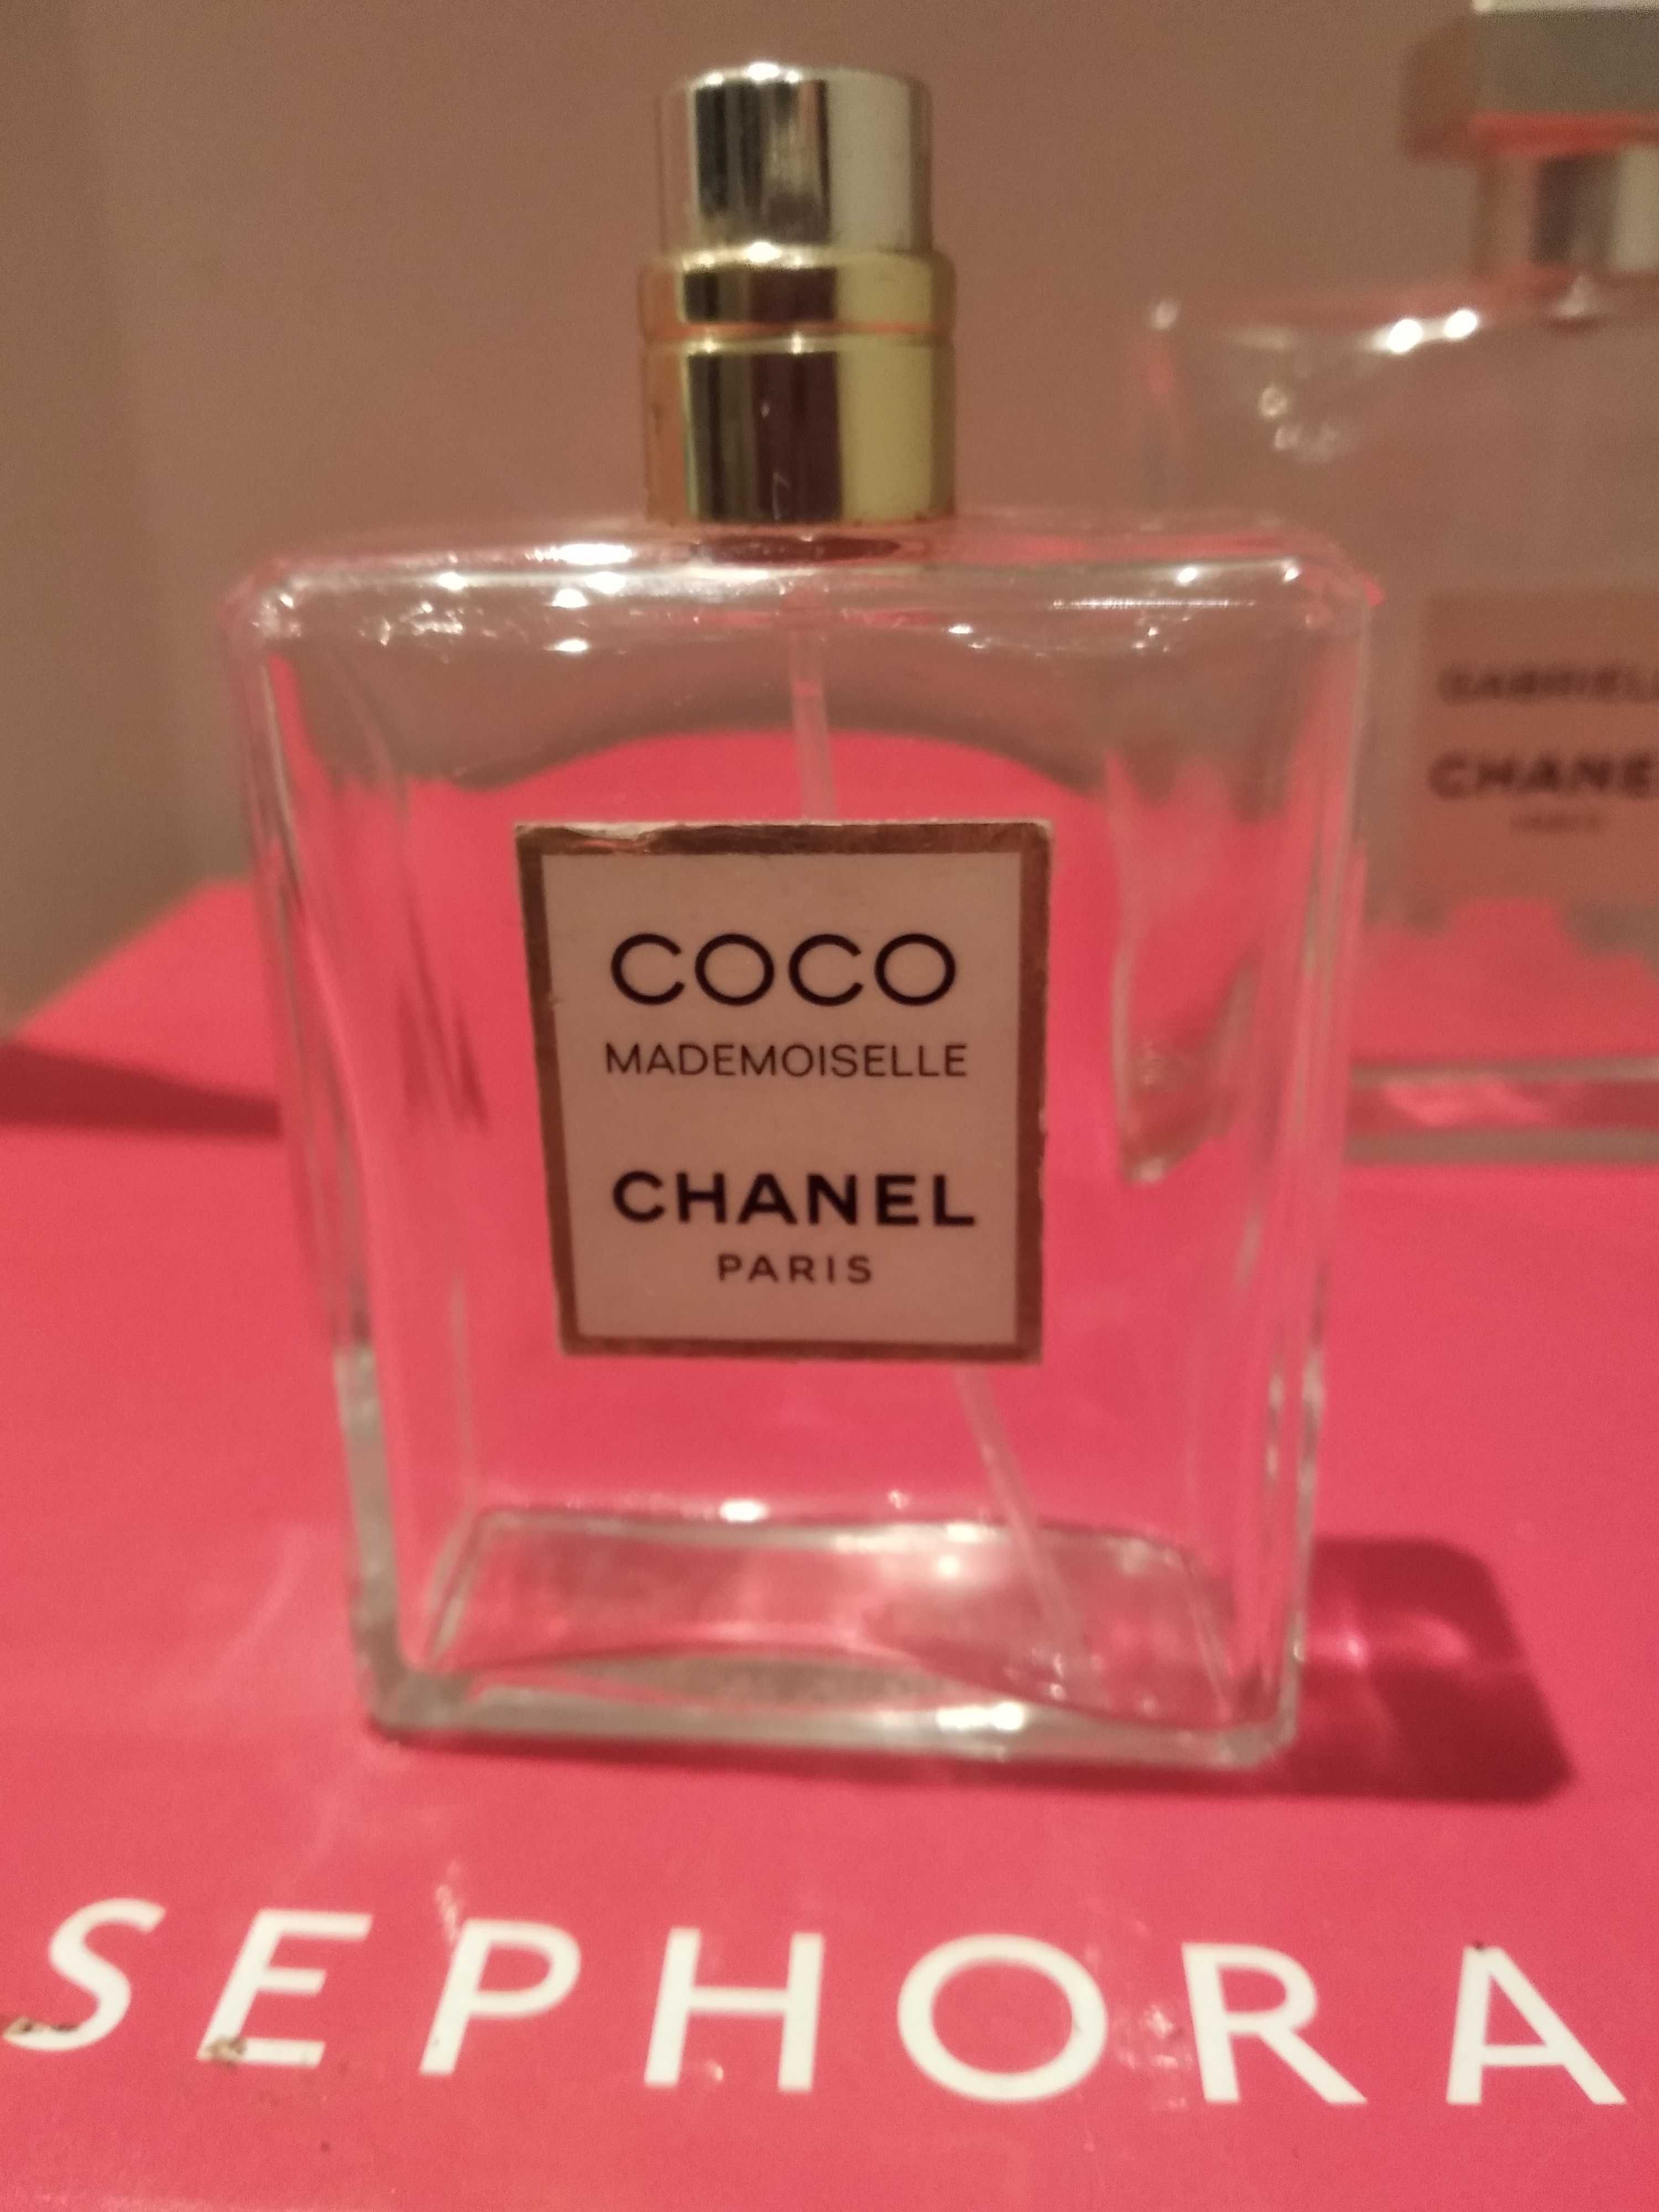 Chanel Coco Mademoiselle puste flakony perfum oryginalny kolekcja